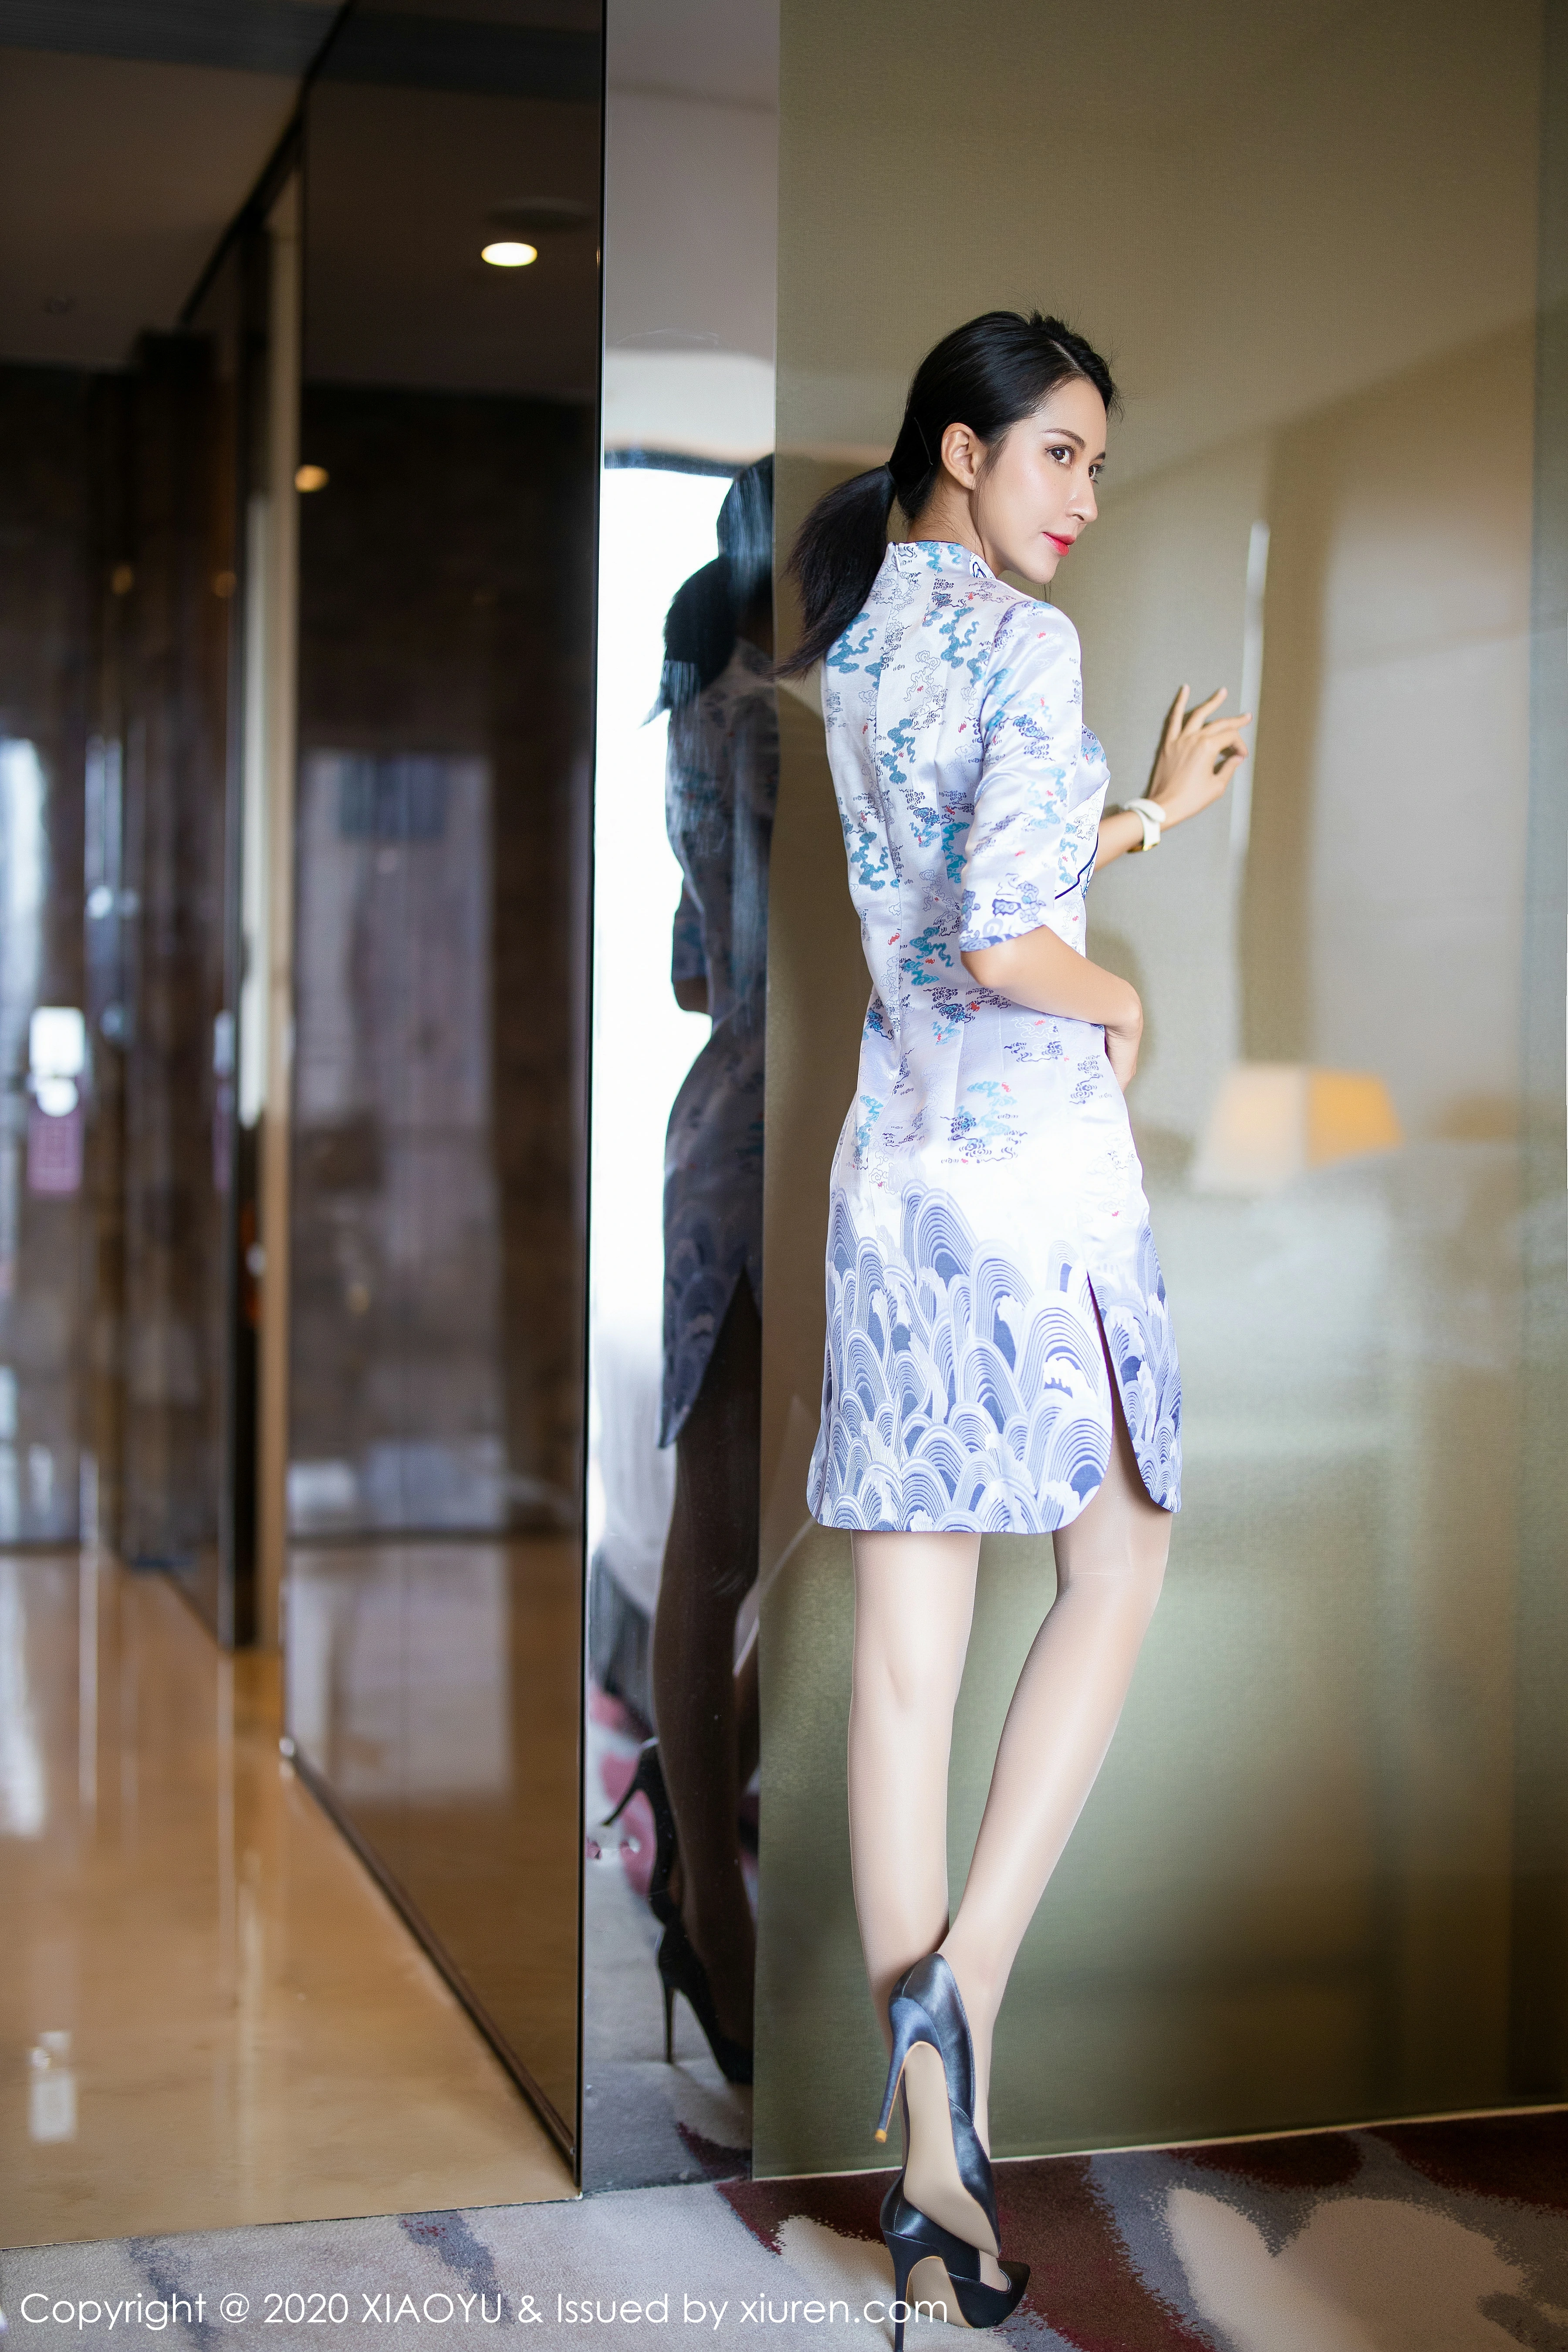 [XIAOYU语画界]YU20200507VOL0304 Carry 白色紧身旗袍与青色蕾丝内衣加肉色丝袜美腿性感私房写真集,